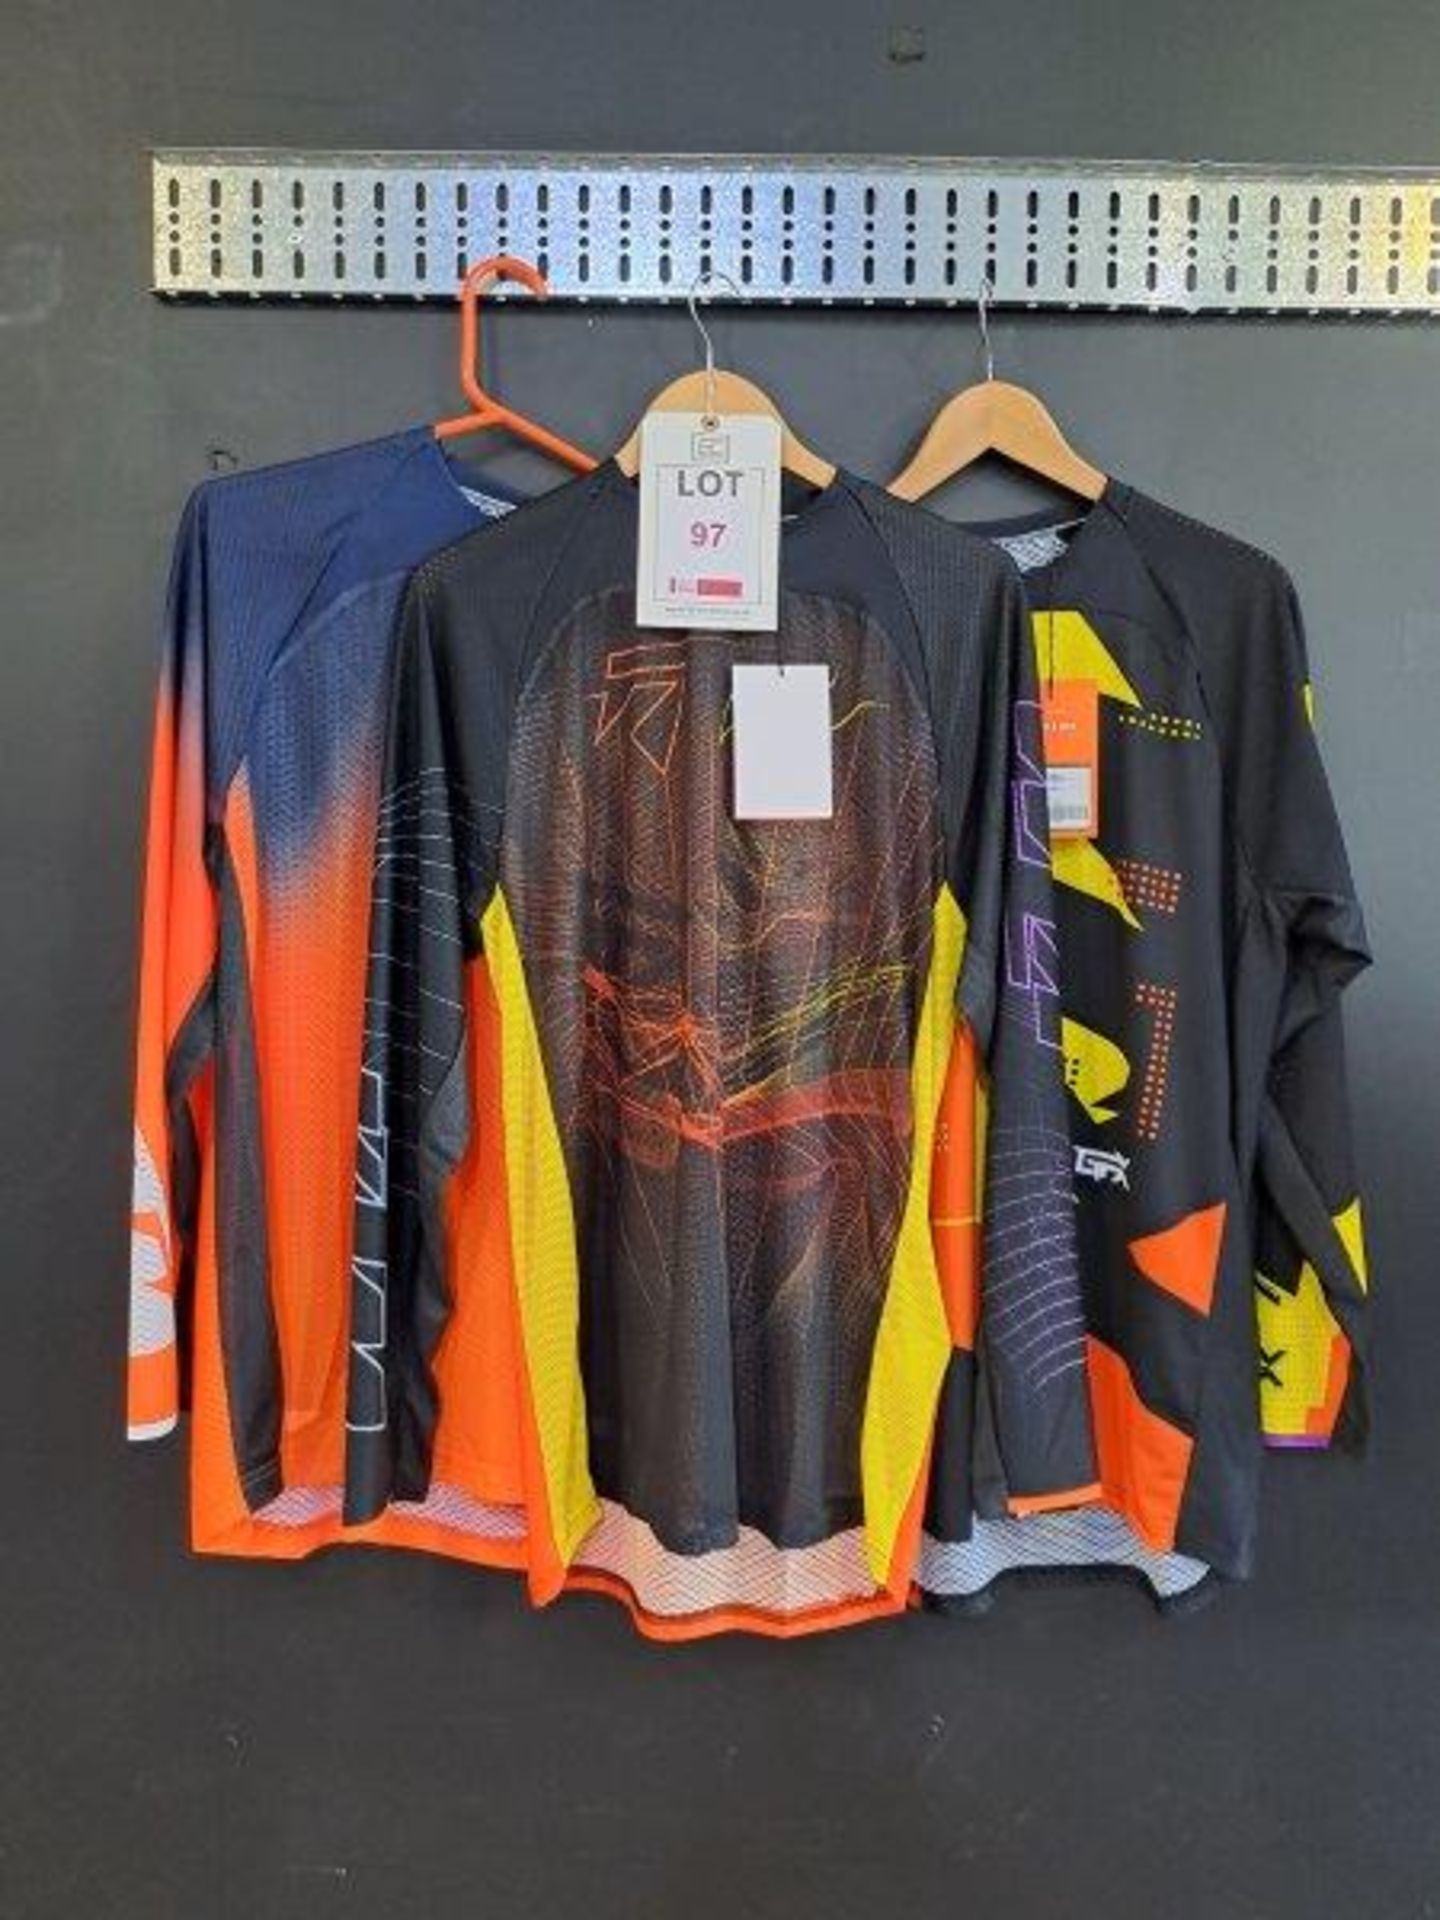 3 x KTM Shirts, Size Large